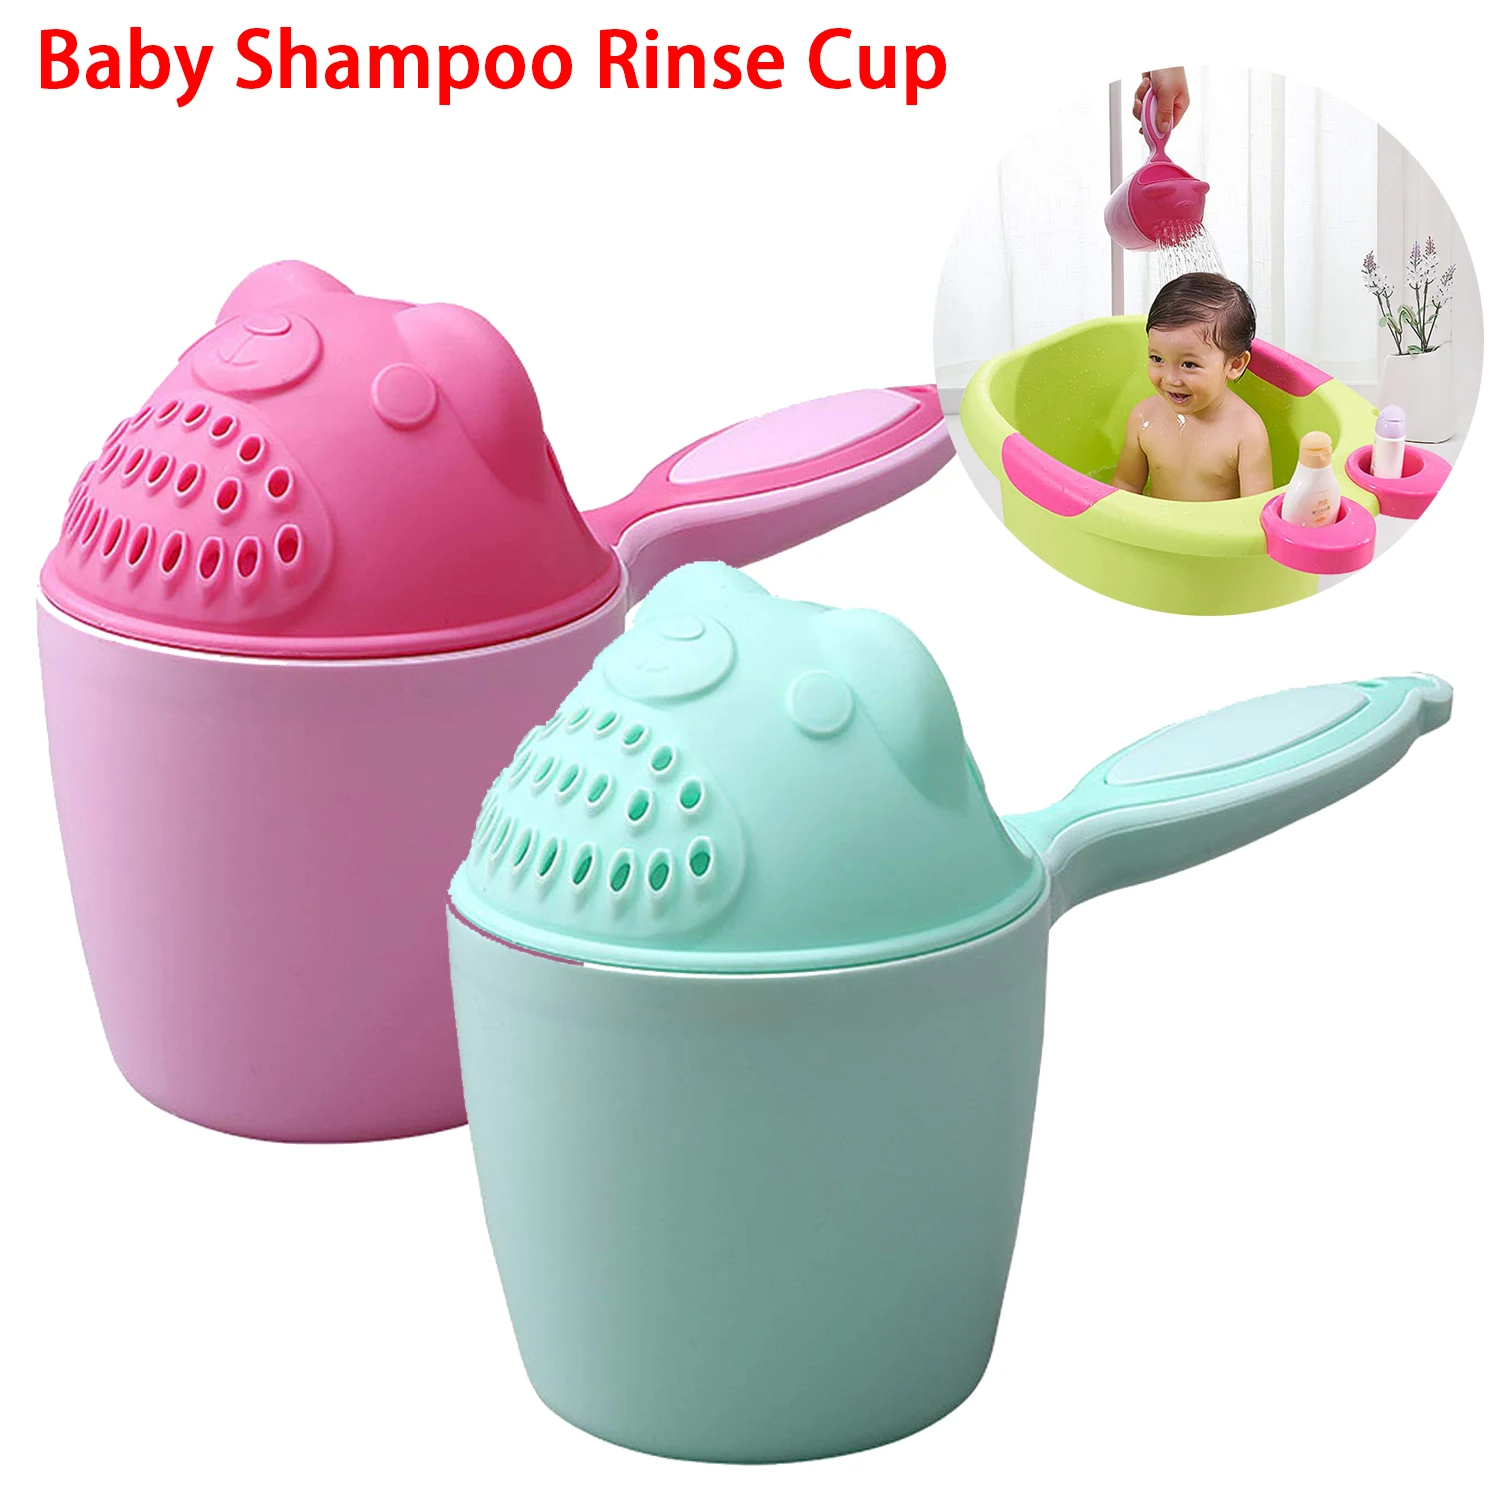 Baby shampoo risciacquo tazza per bambini cascata vano risciacquo bambini bagni cuci